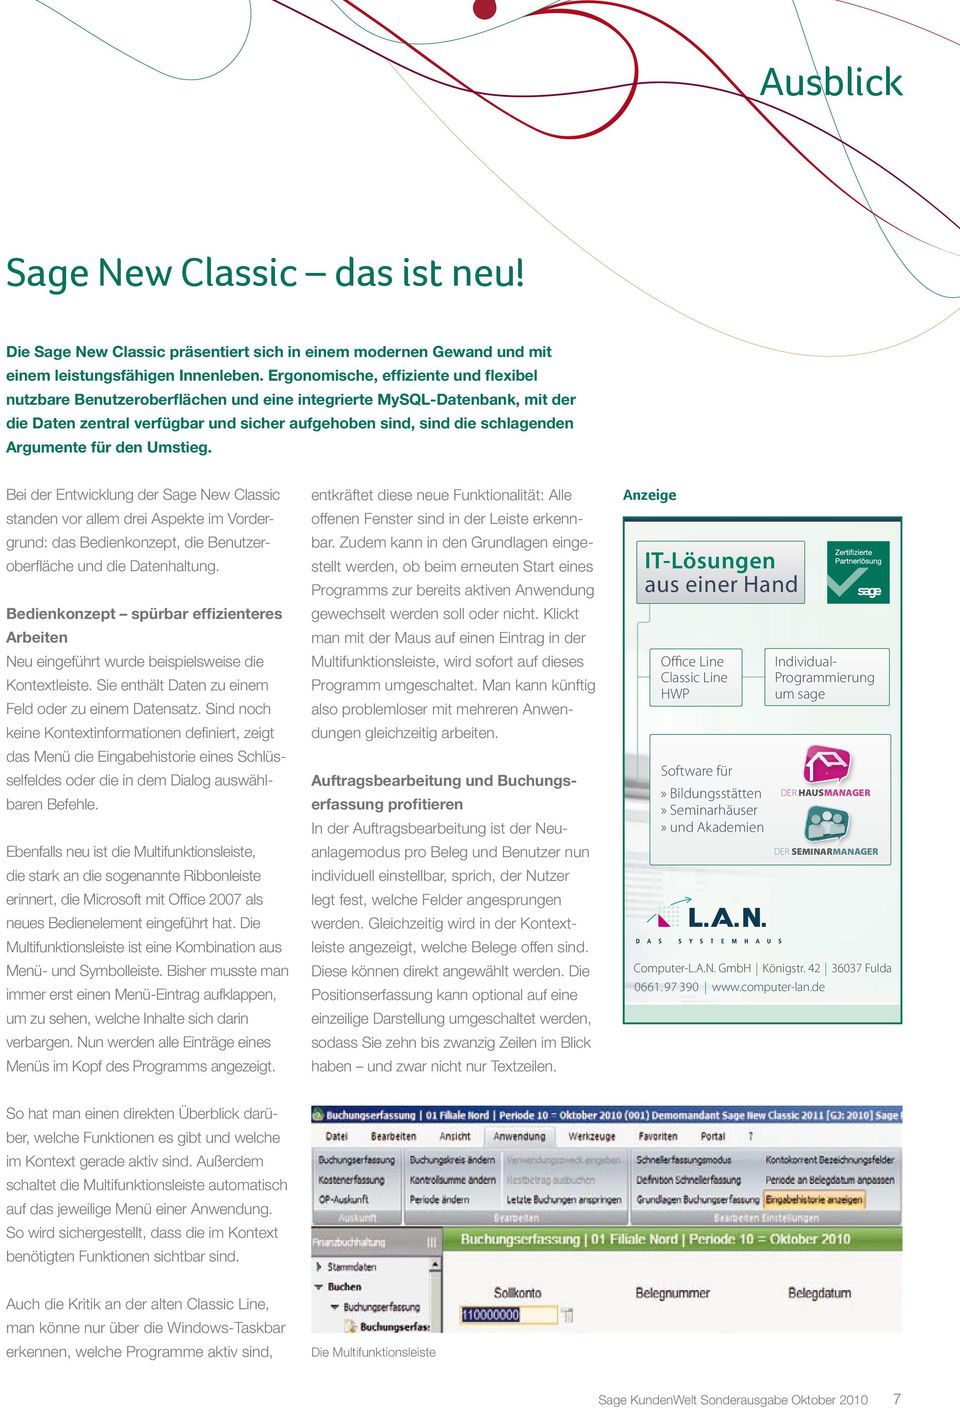 für den Umstieg. Bei der Entwicklung der Sage New Classic standen vor allem drei Aspekte im Vordergrund: das Bedienkonzept, die Benutzeroberfläche und die Datenhaltung.